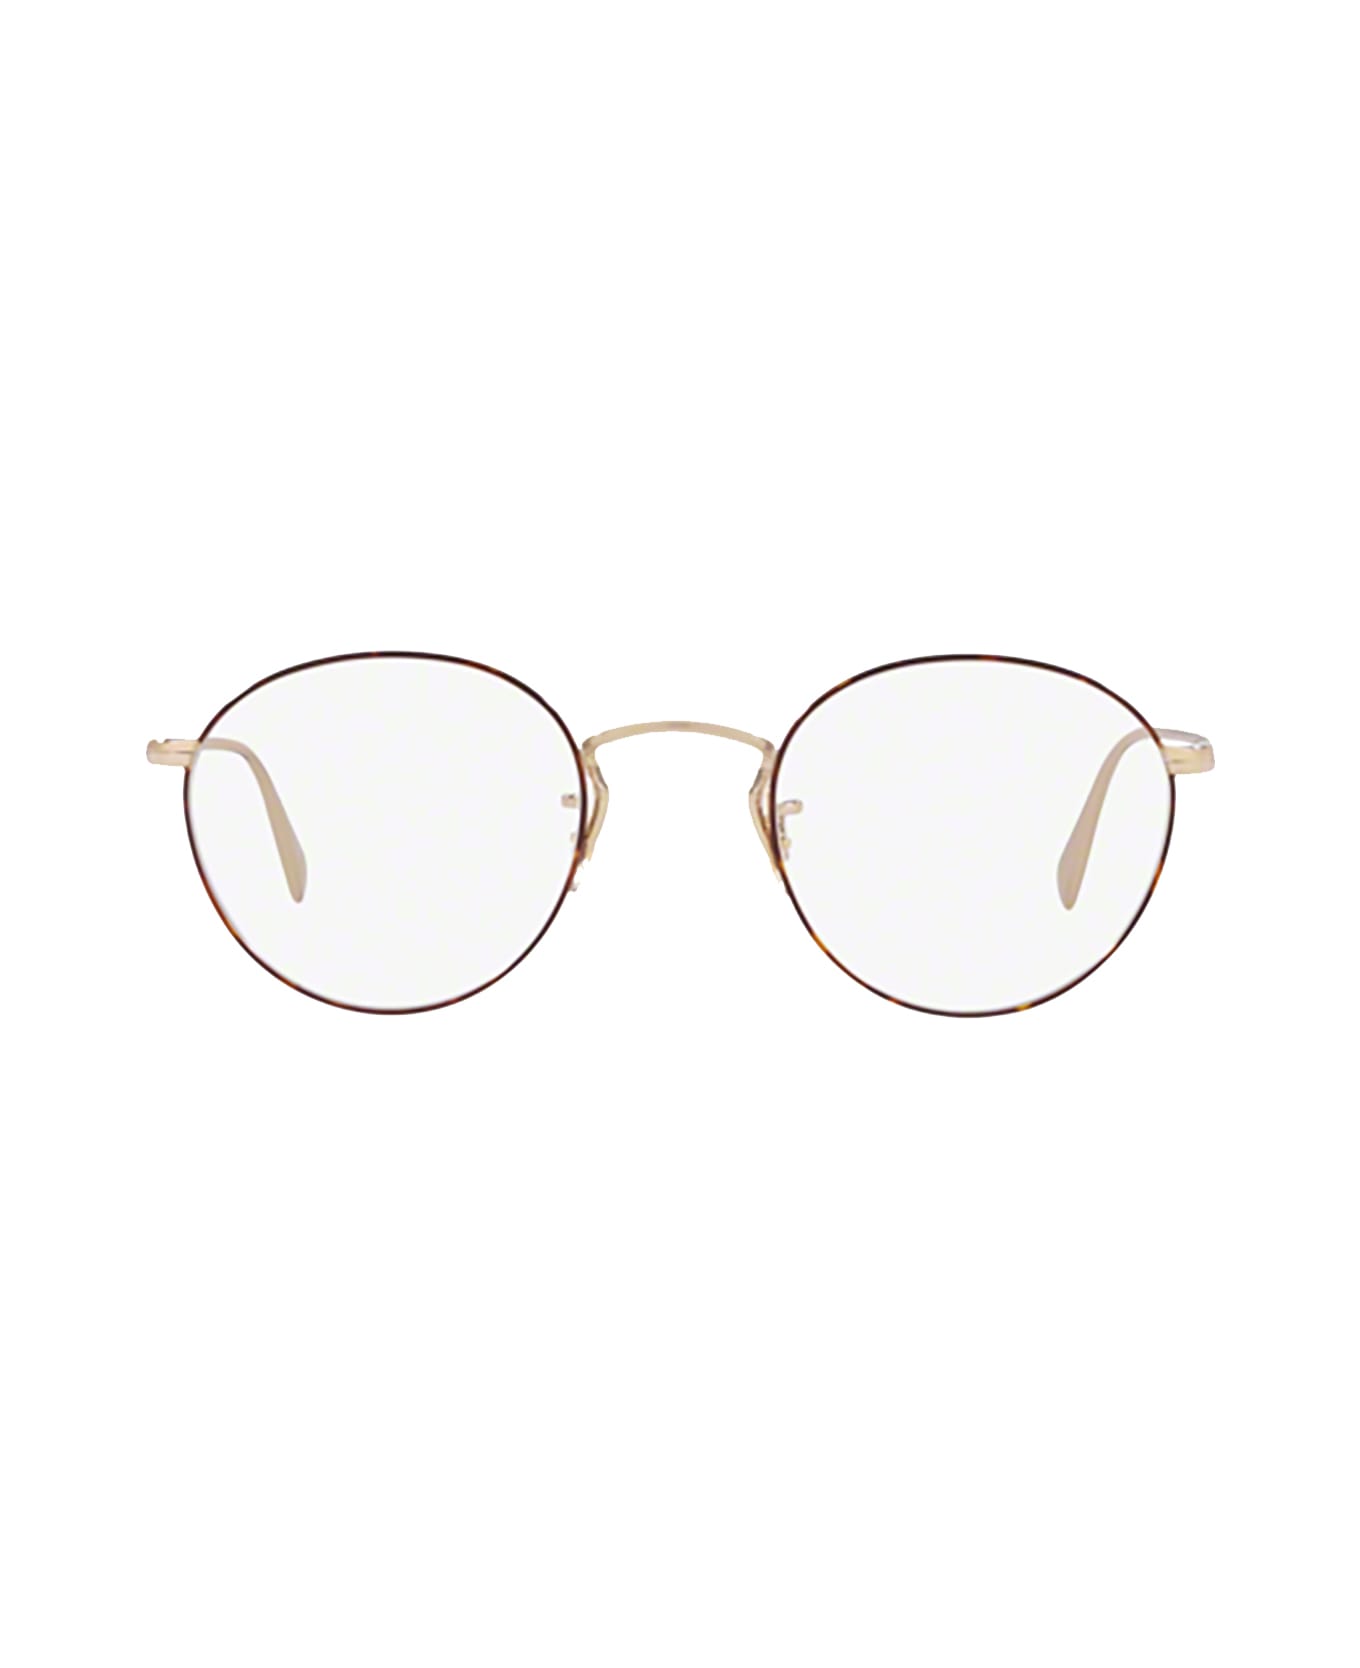 Oliver Peoples Ov1186 Soft Gold / Amber Dtbk Foil Glasses - Soft Gold / Amber DTBK Foil